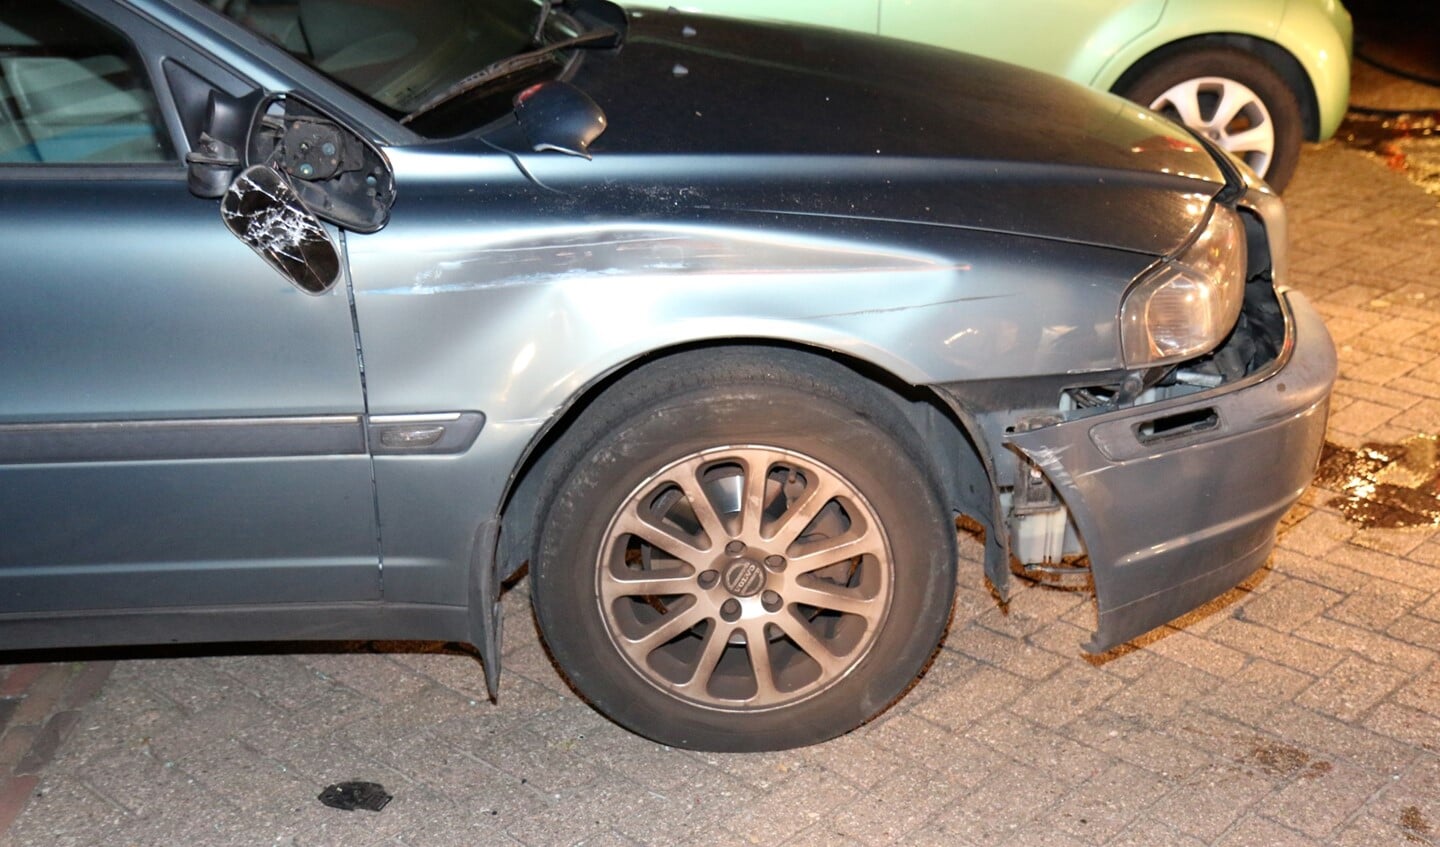 De schade aan de geparkeerde auto wordt onderling geregeld